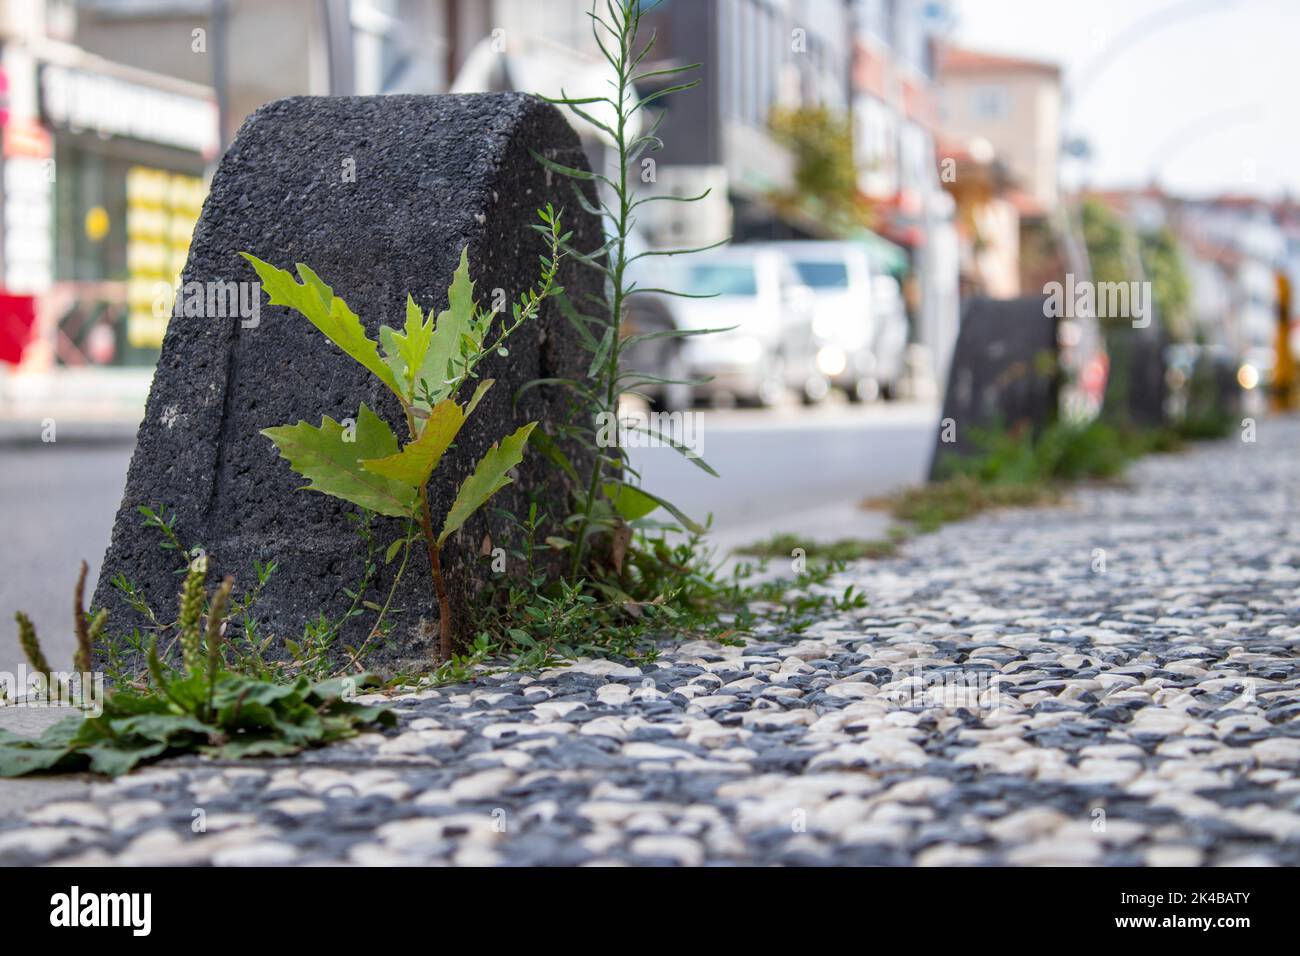 Gras sprießt auf dem Bürgersteig in der Stadt. Stadtstraße am Morgen. Natur, Mensch und Stadtchaos. Der Fokus liegt auf dem Pflasterstein. Stockfoto